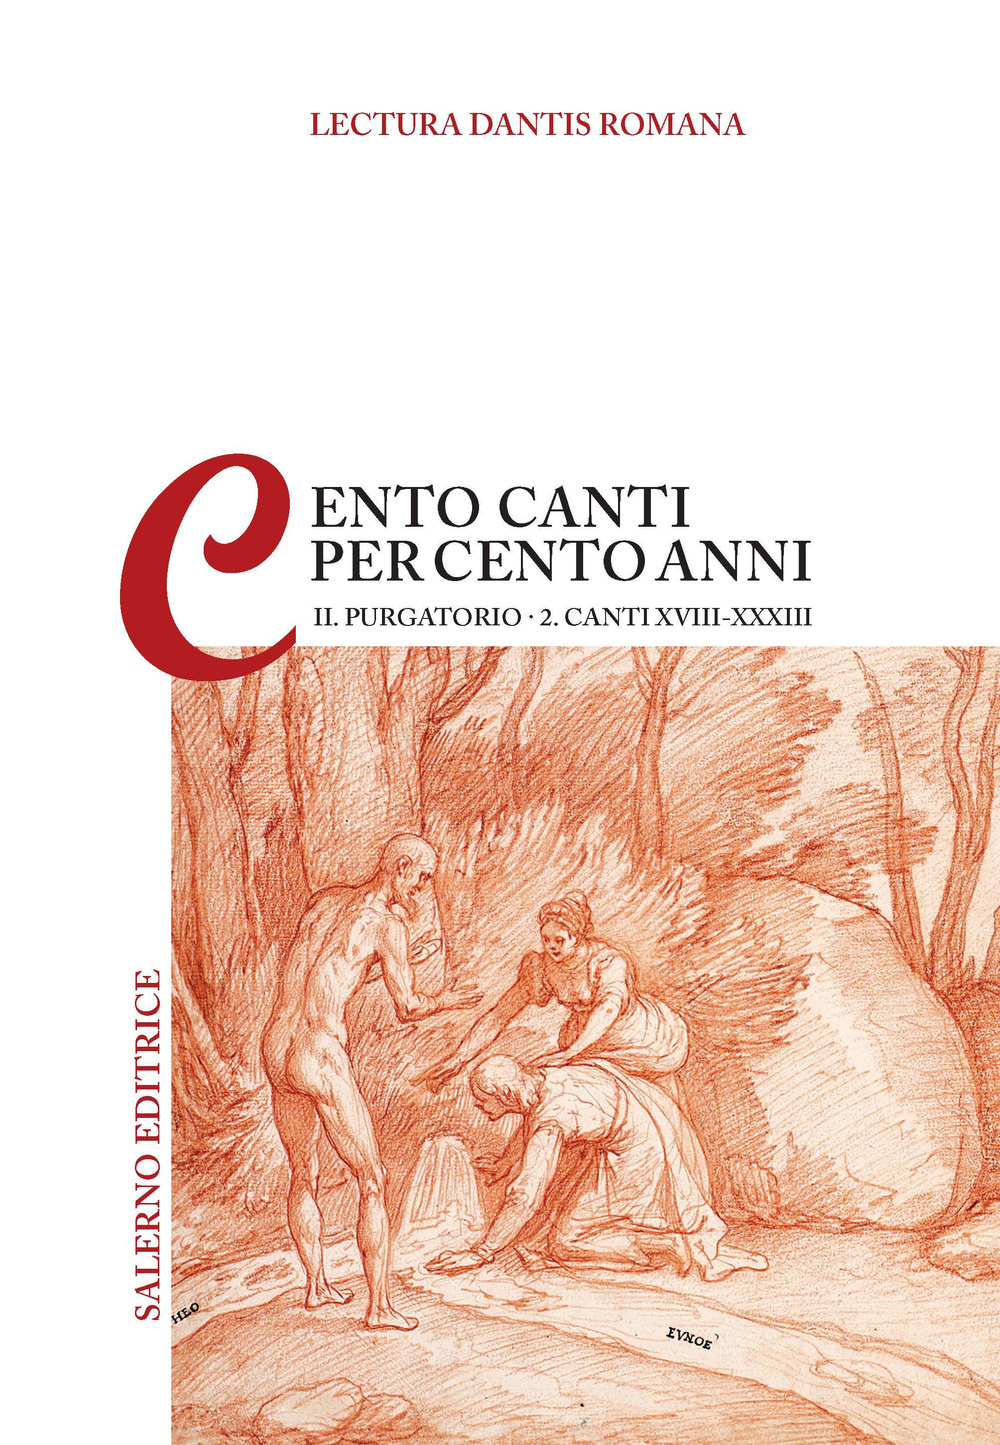 Image of Lectura Dantis Romana. Cento canti per cento anni. Vol. 22: Purgatorio. Canti XVIII-XXXIII.